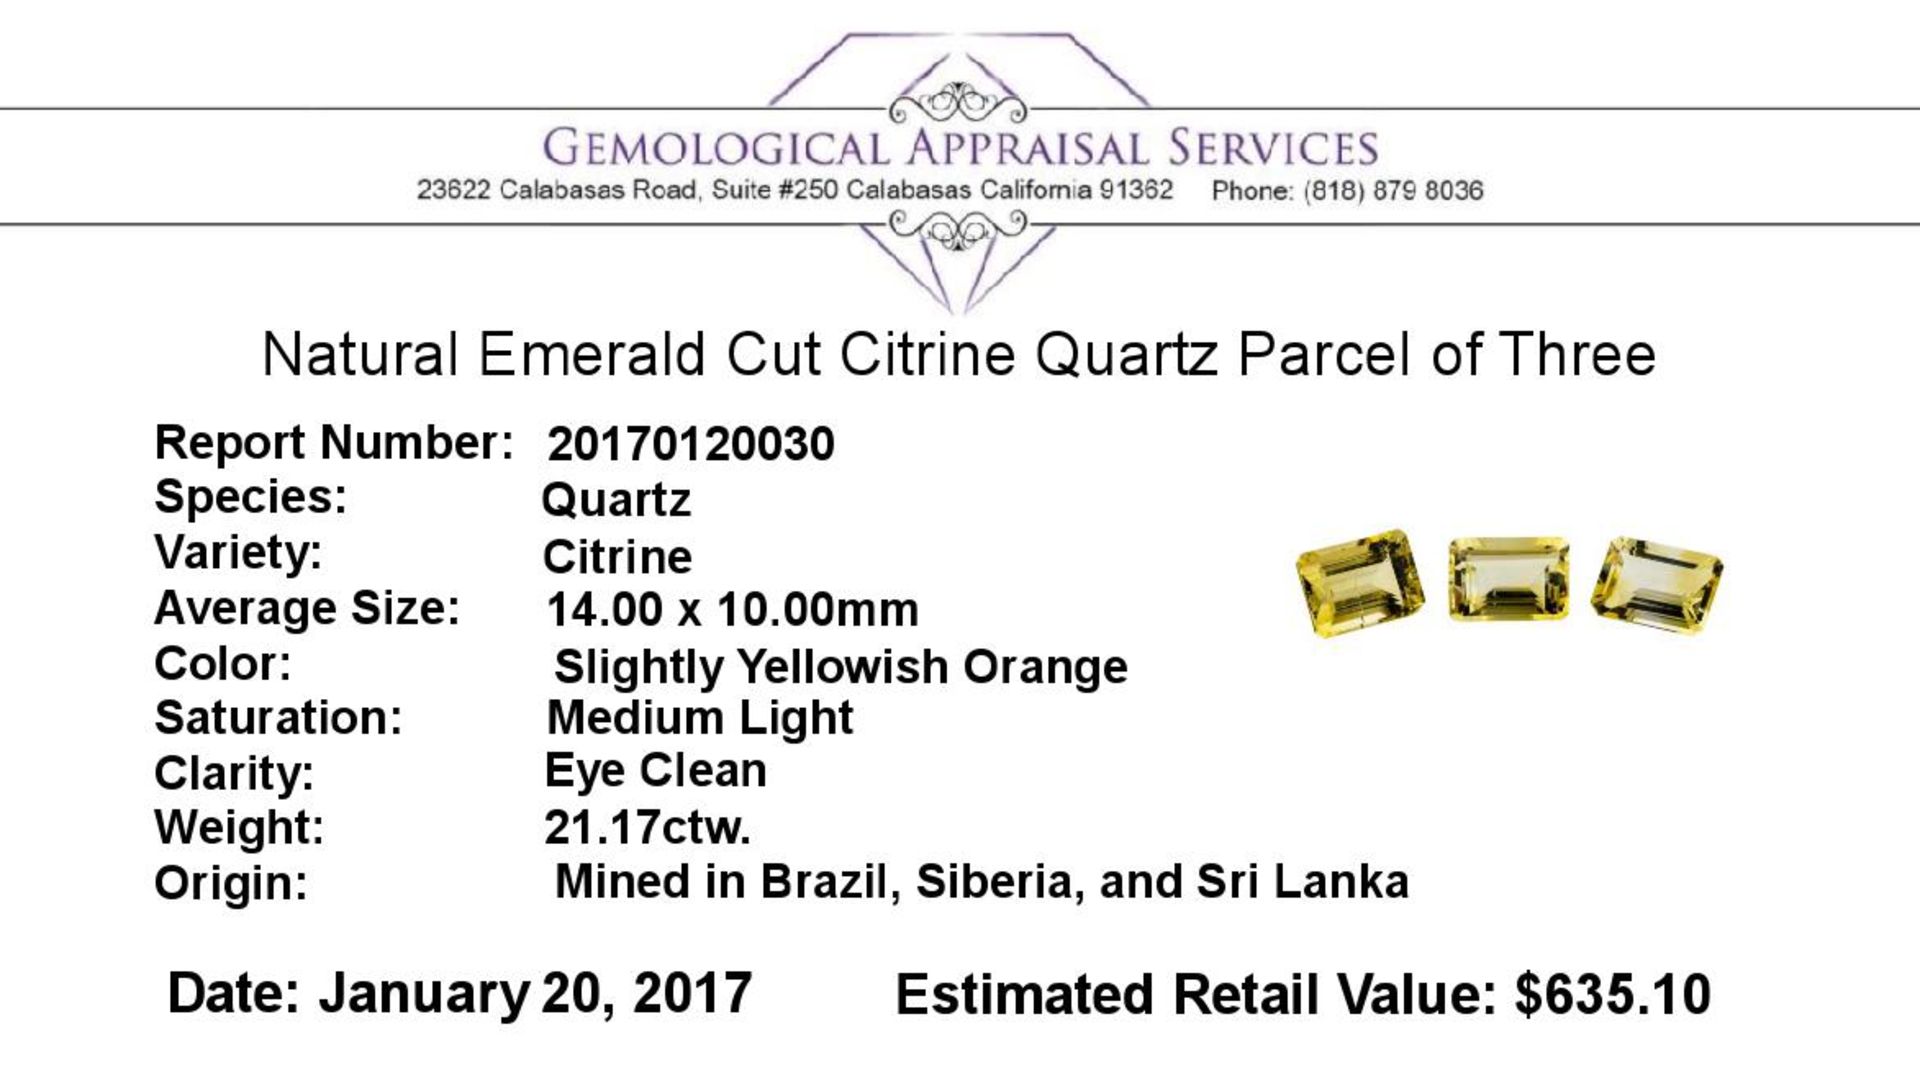 21.17 ctw.Natural Emerald Cut Citrine Quartz Parcel of Three - Image 3 of 3